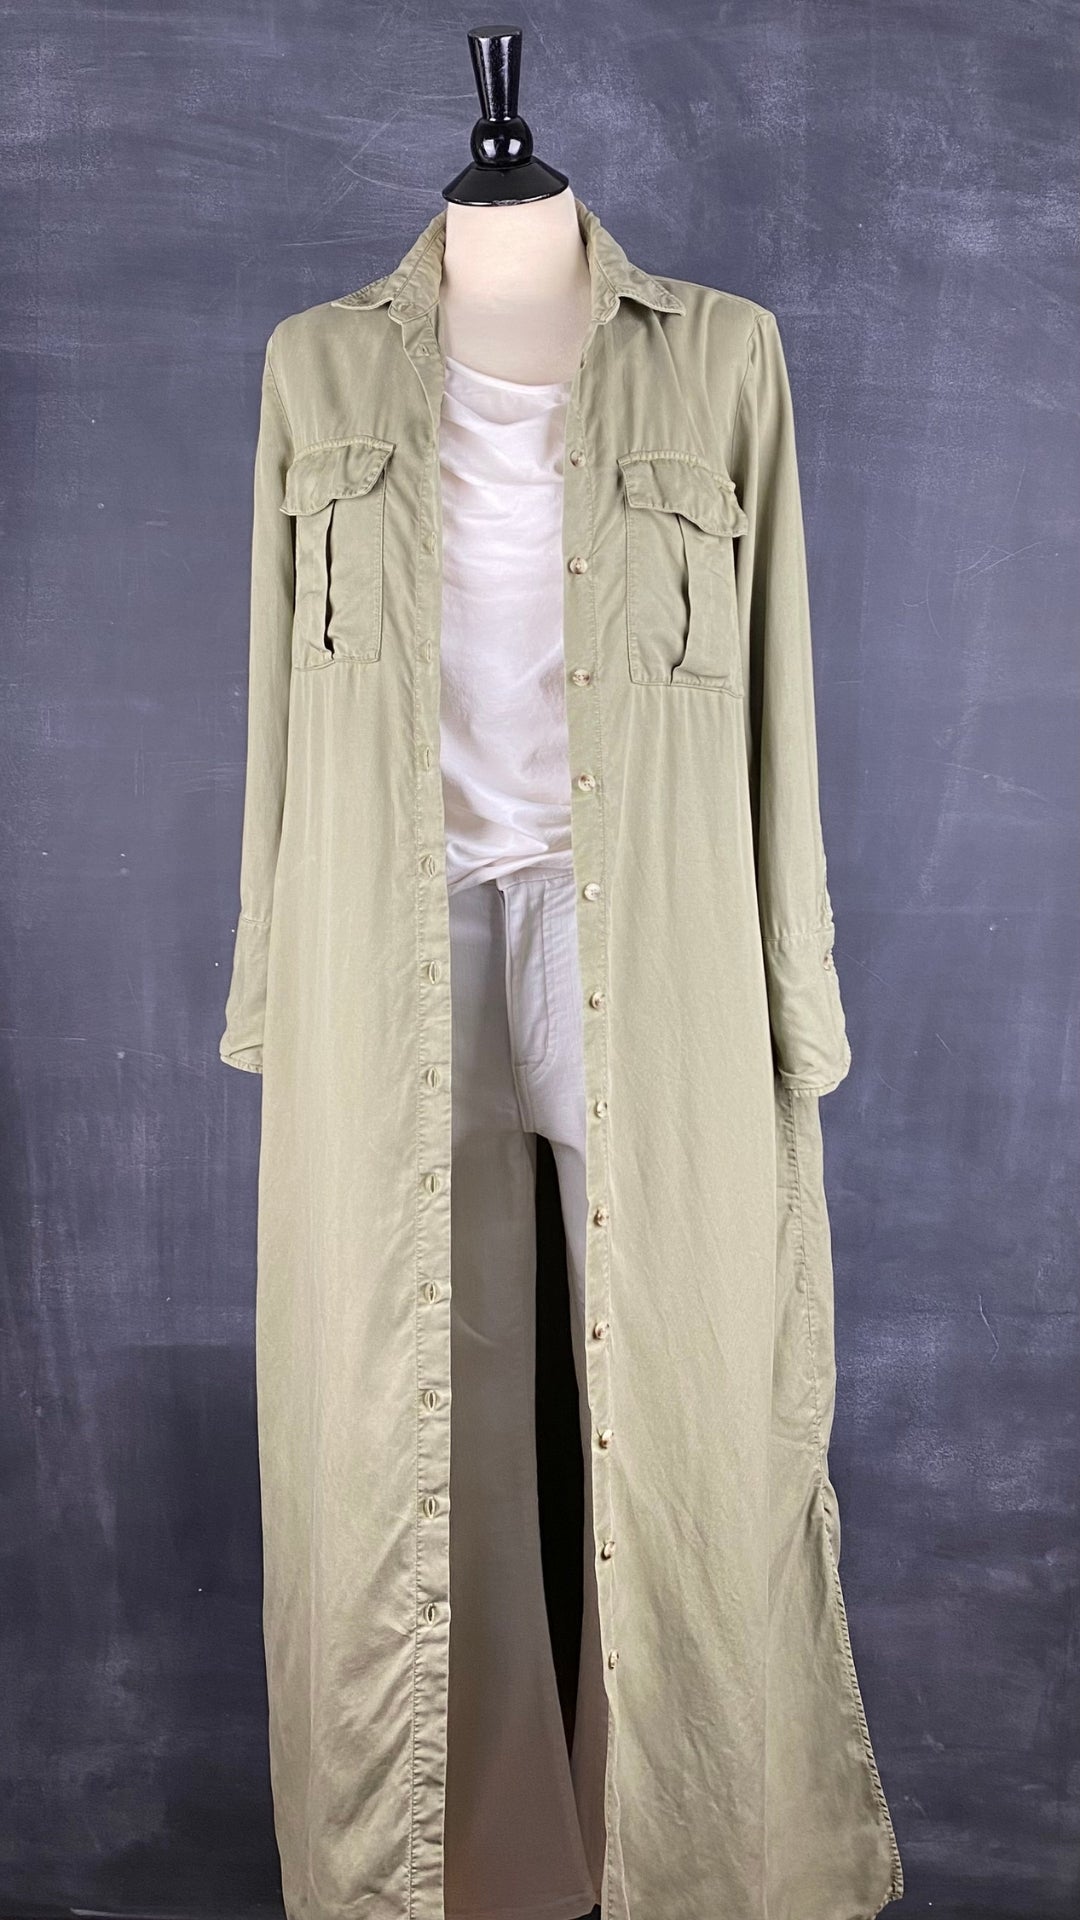 Robe chemisier longue kaki/olive doux en lyocell Massimo Dutti, taille 6. Vue de l'agencement avec la camisole crème et le pantalon blanc.